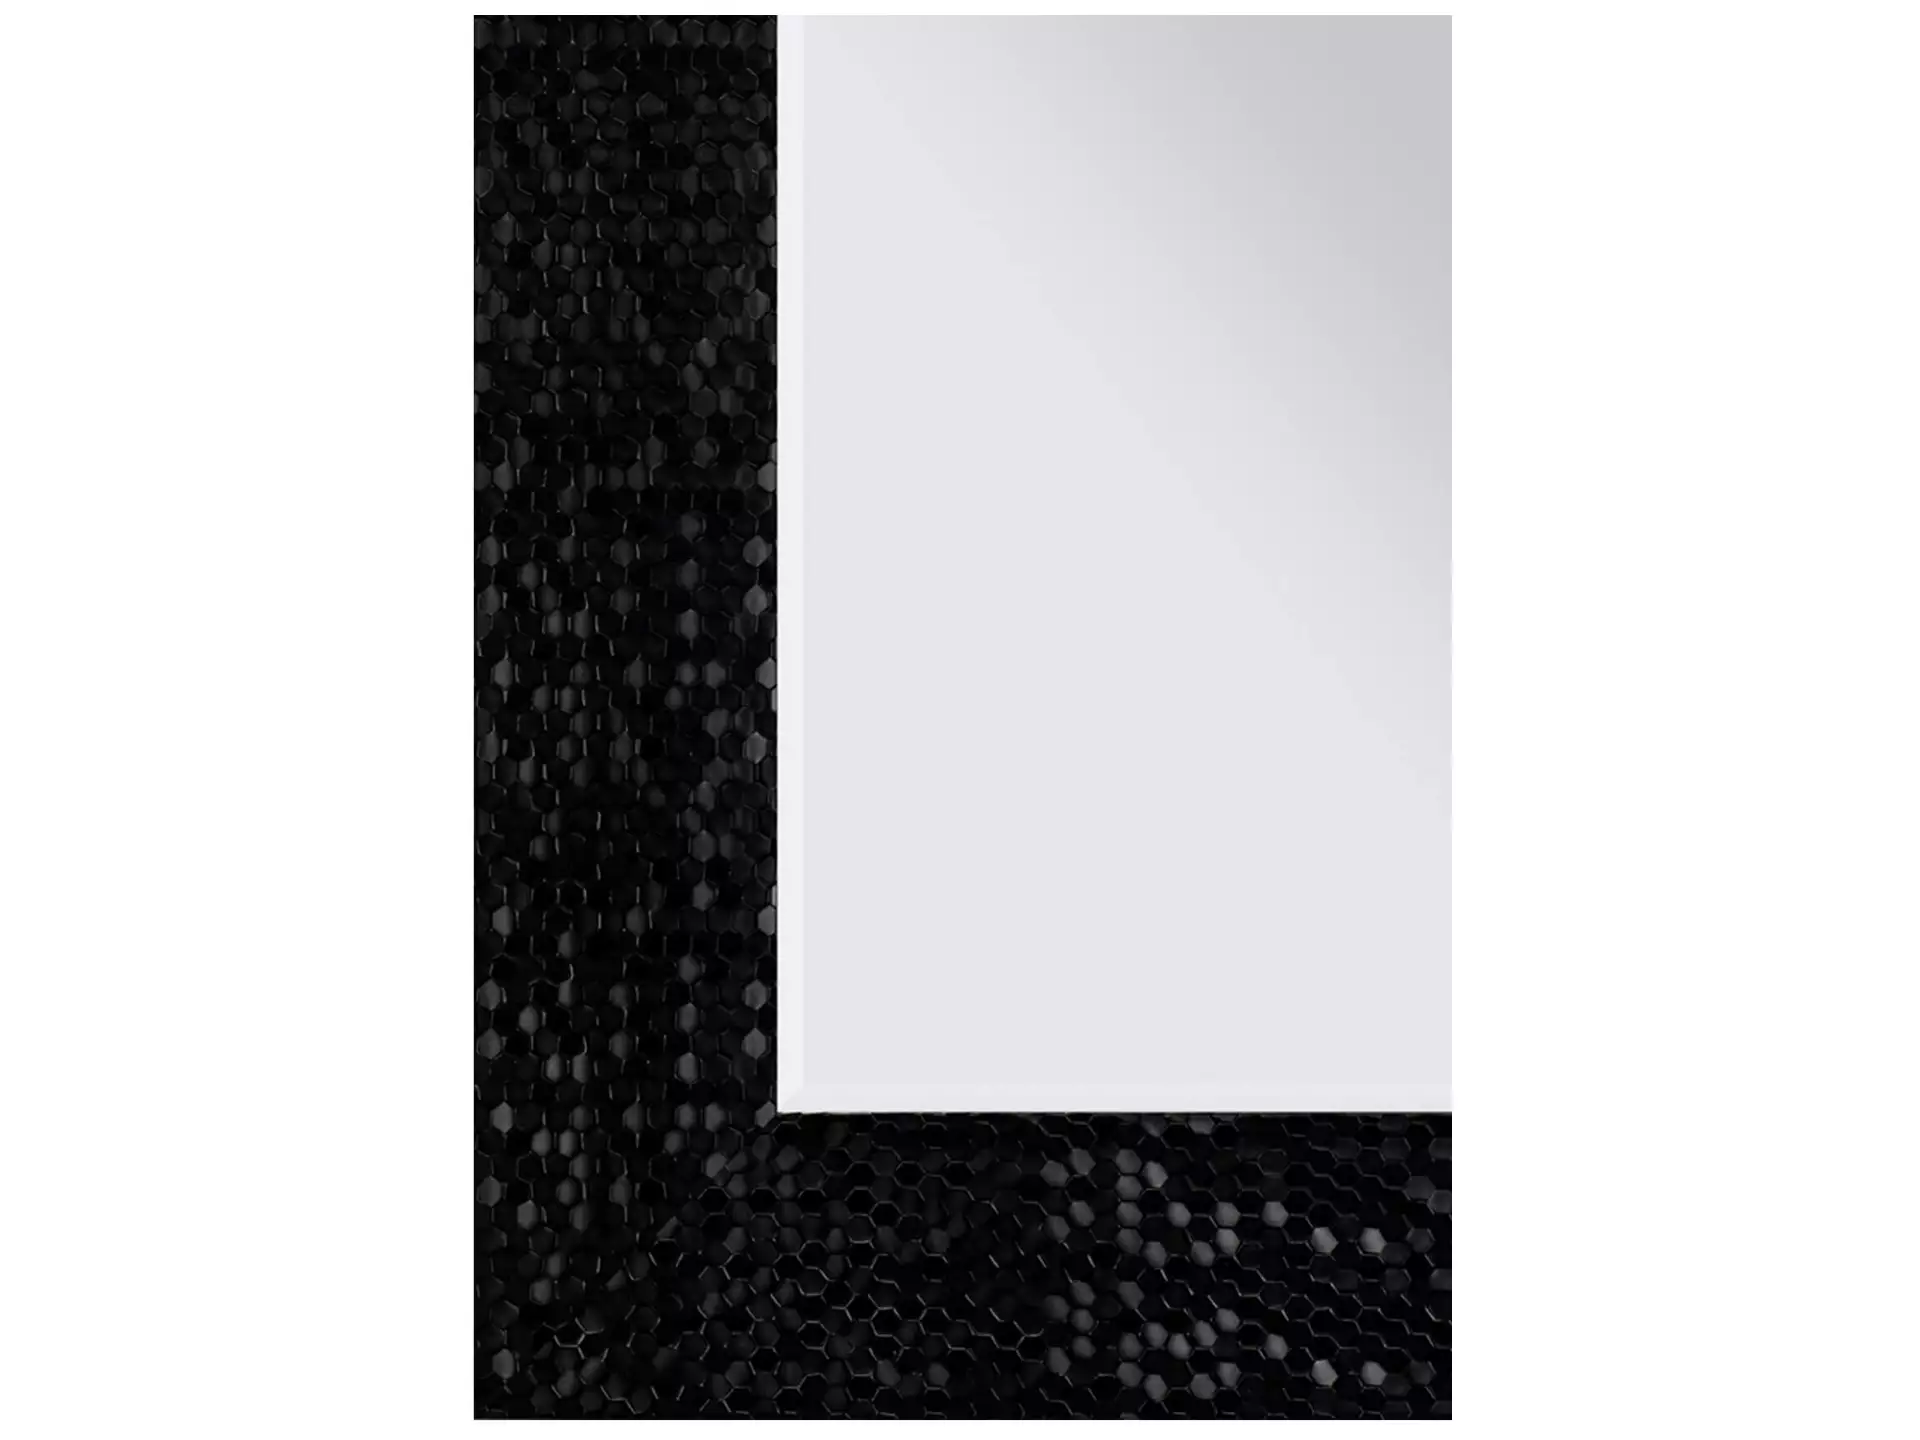 Spiegel Mit Rahmen, Schwarz 68 x 158 cm image LAND